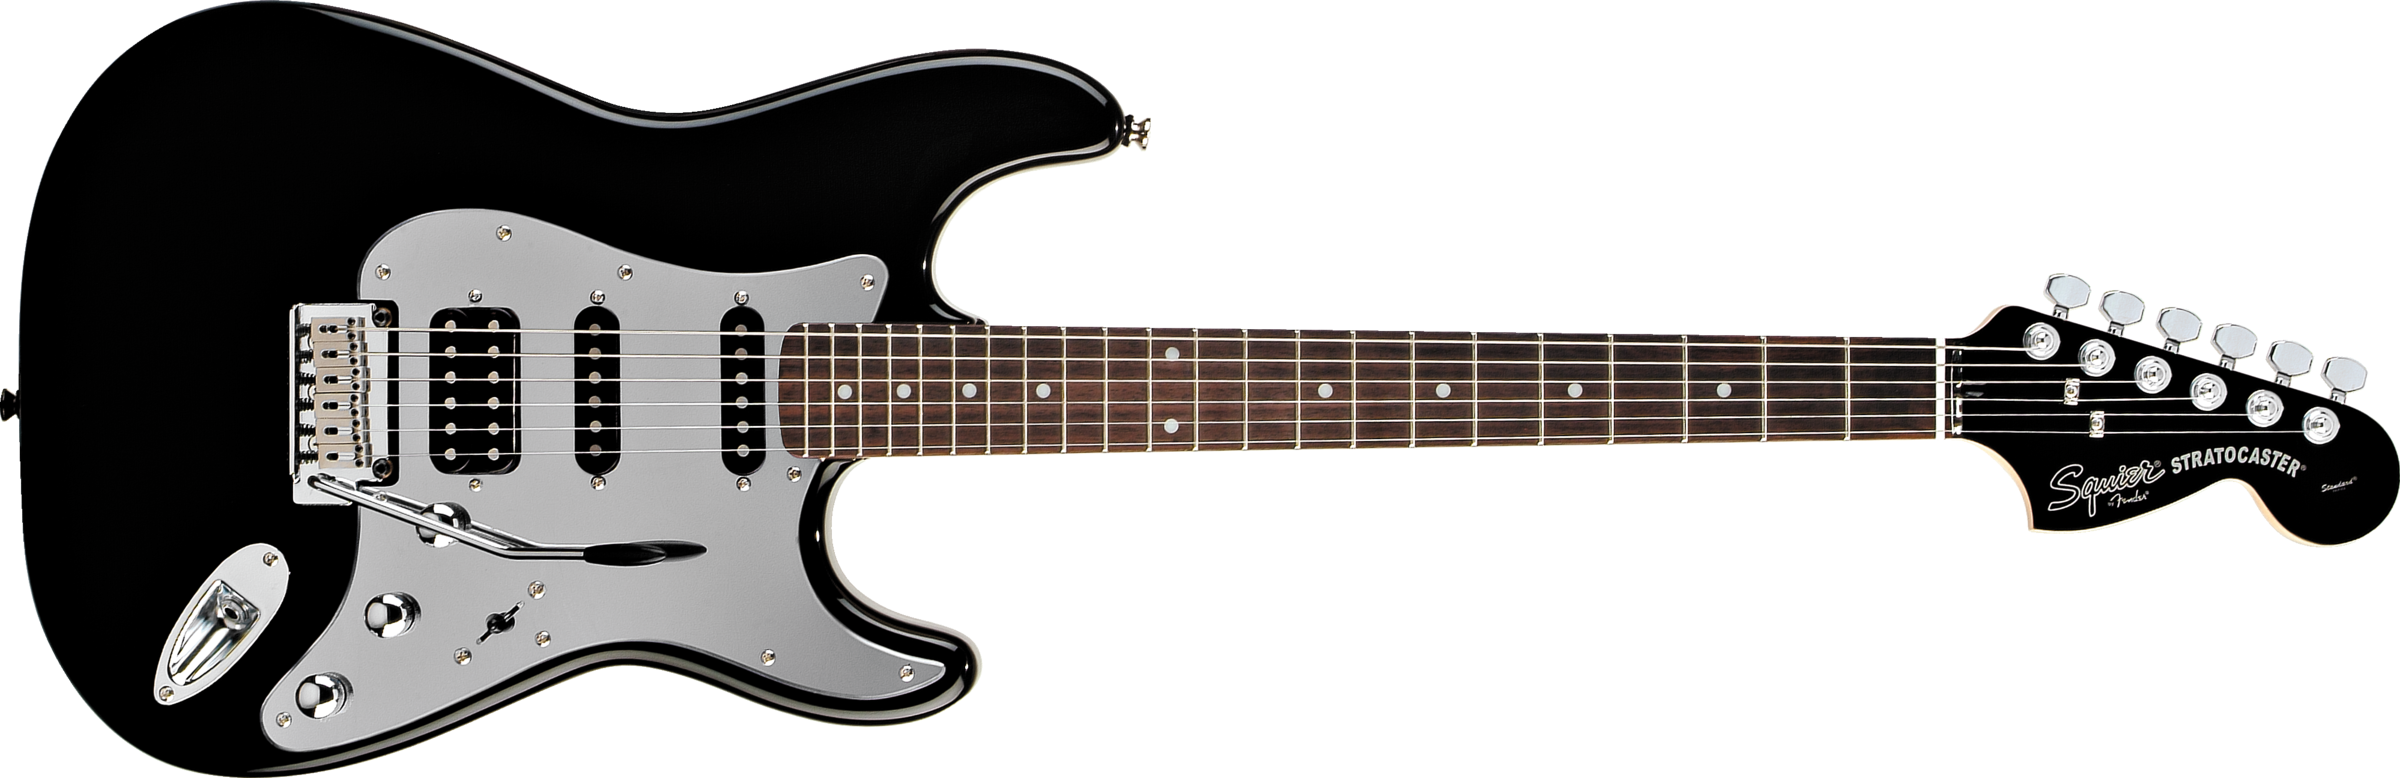 Guitar PNG imagen de alta calidad